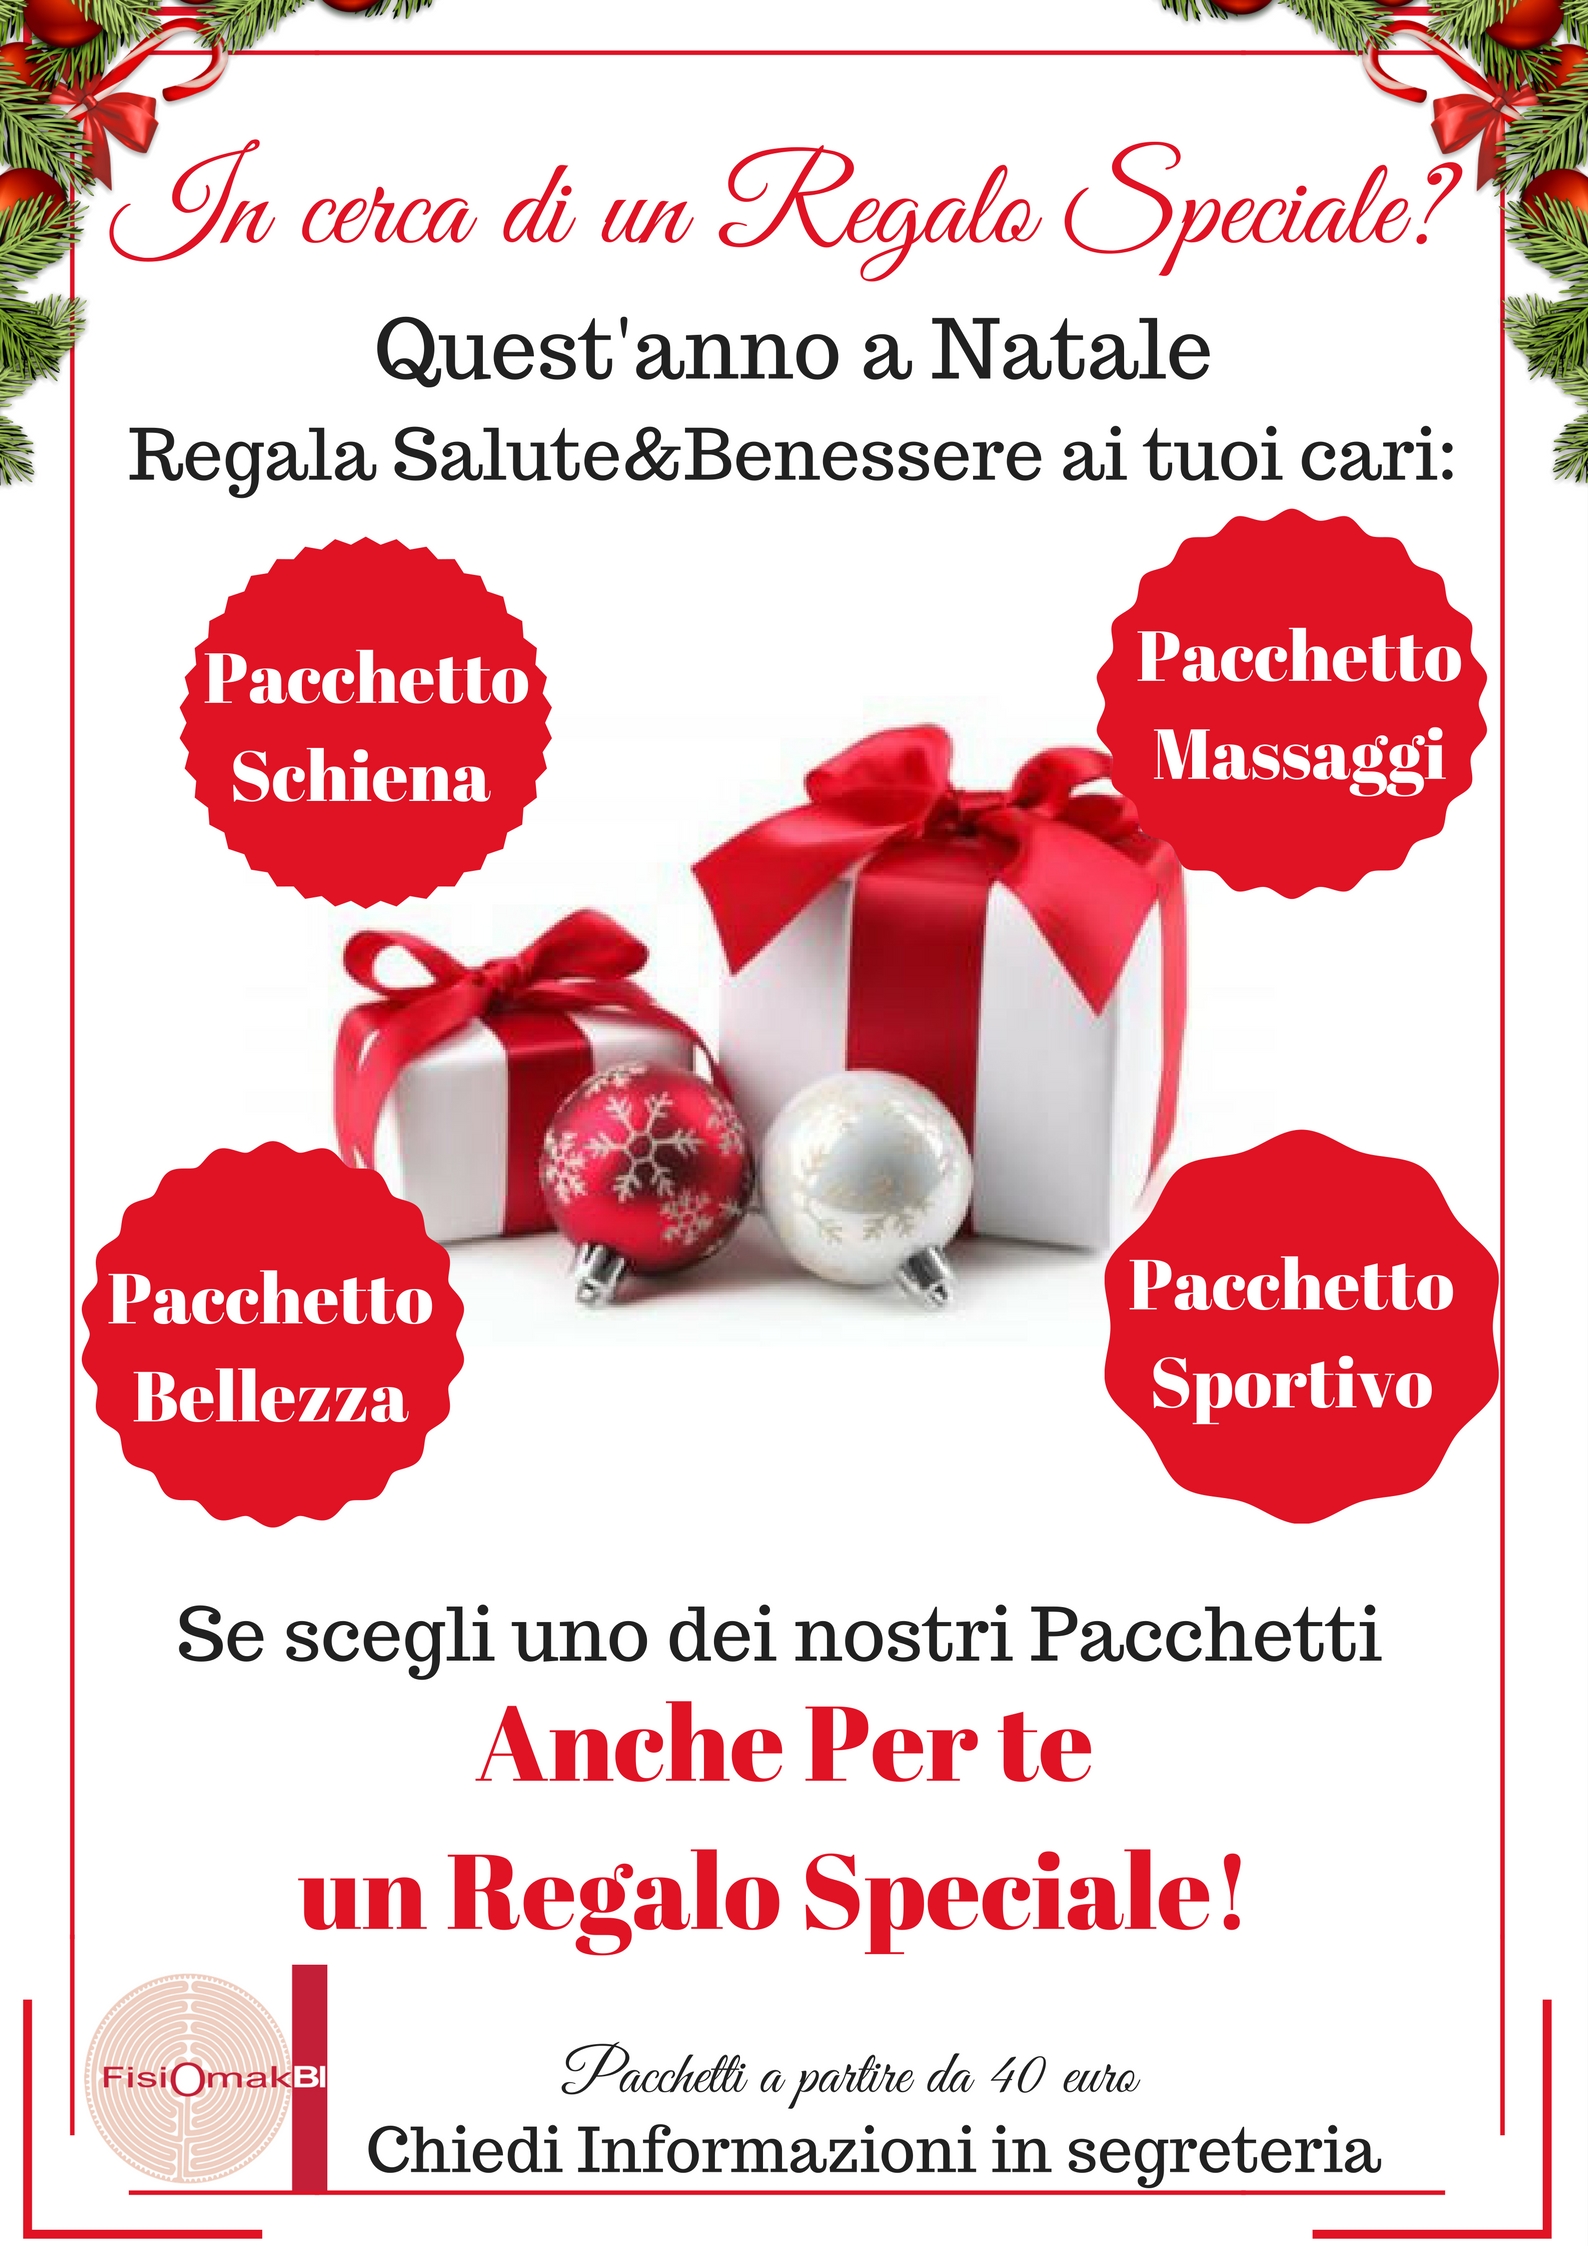 Regali Benessere Natale.In Cerca Di Un Regalo Speciale Fisiomakbi Fisioterapia Prato